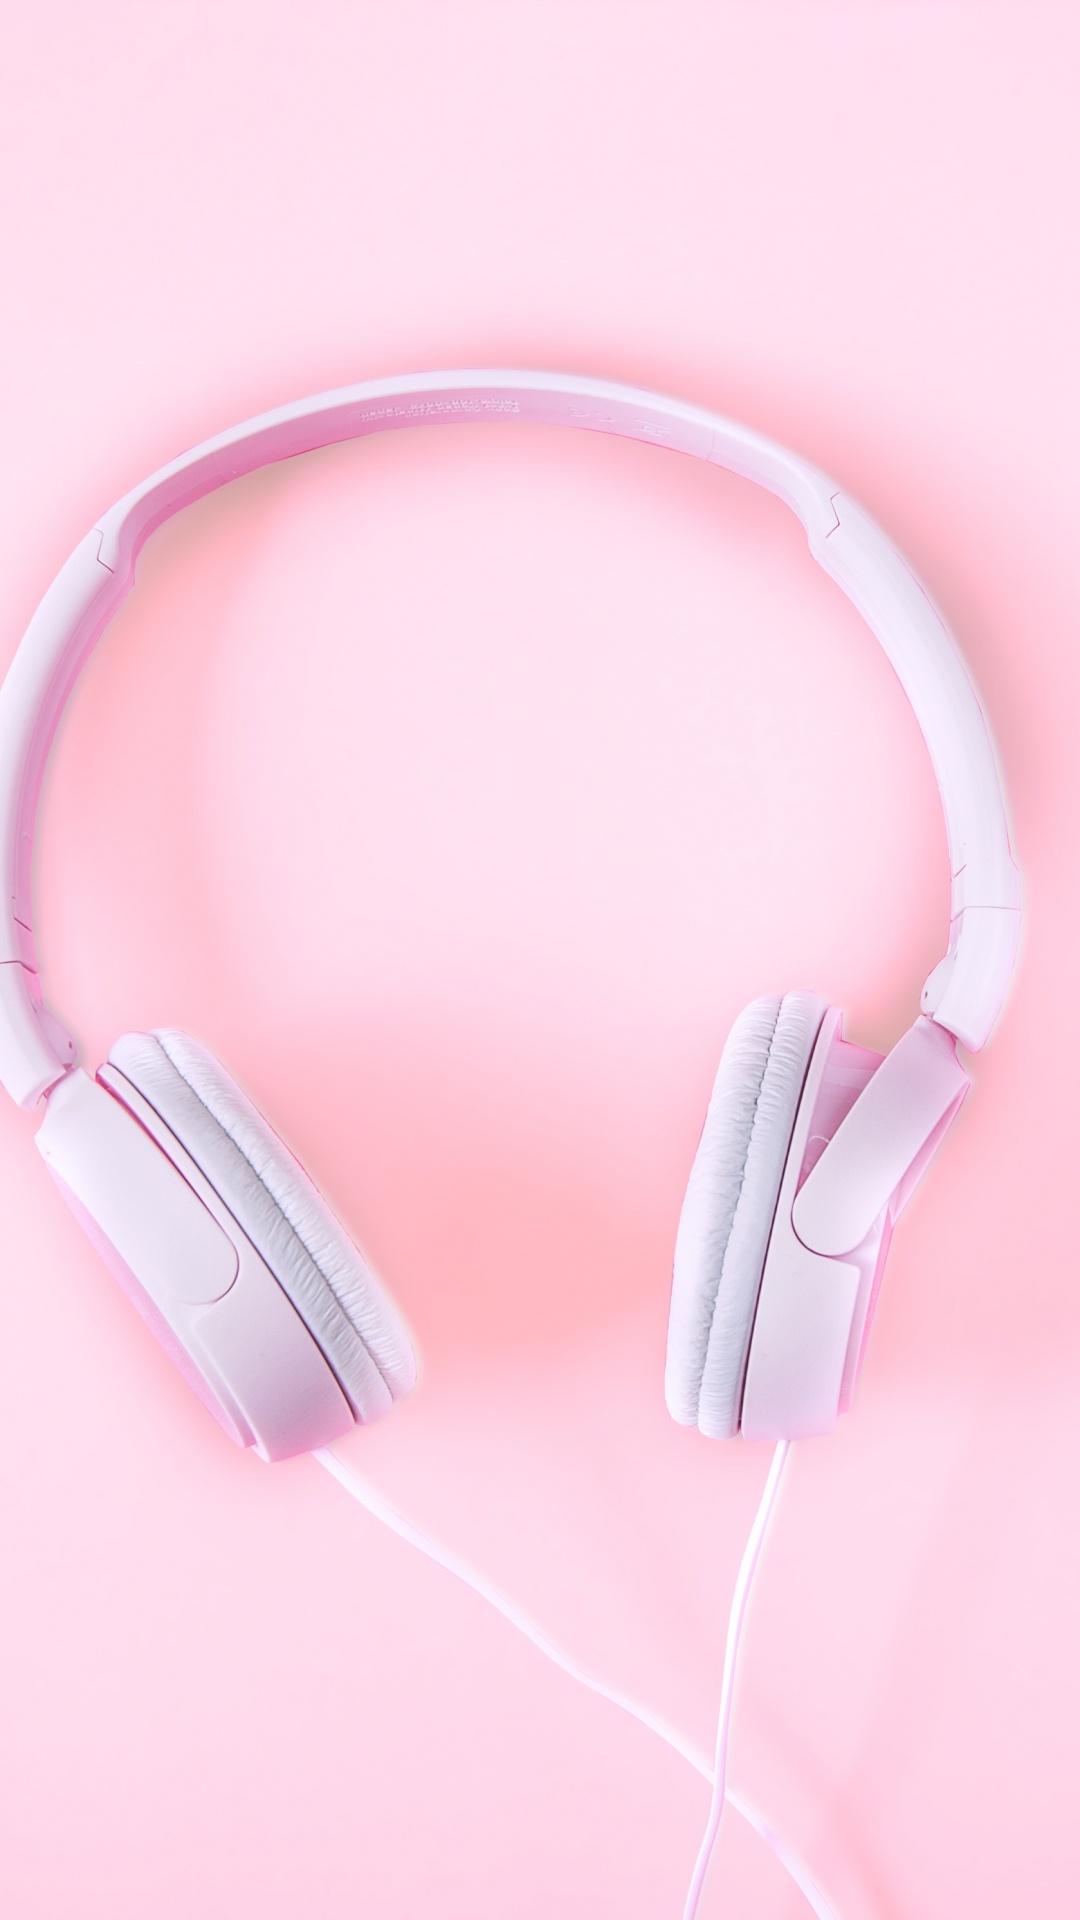 Kopfhörer, Pink, Audiogeräten, Gadget, Ohr. Wallpaper in 1080x1920 Resolution